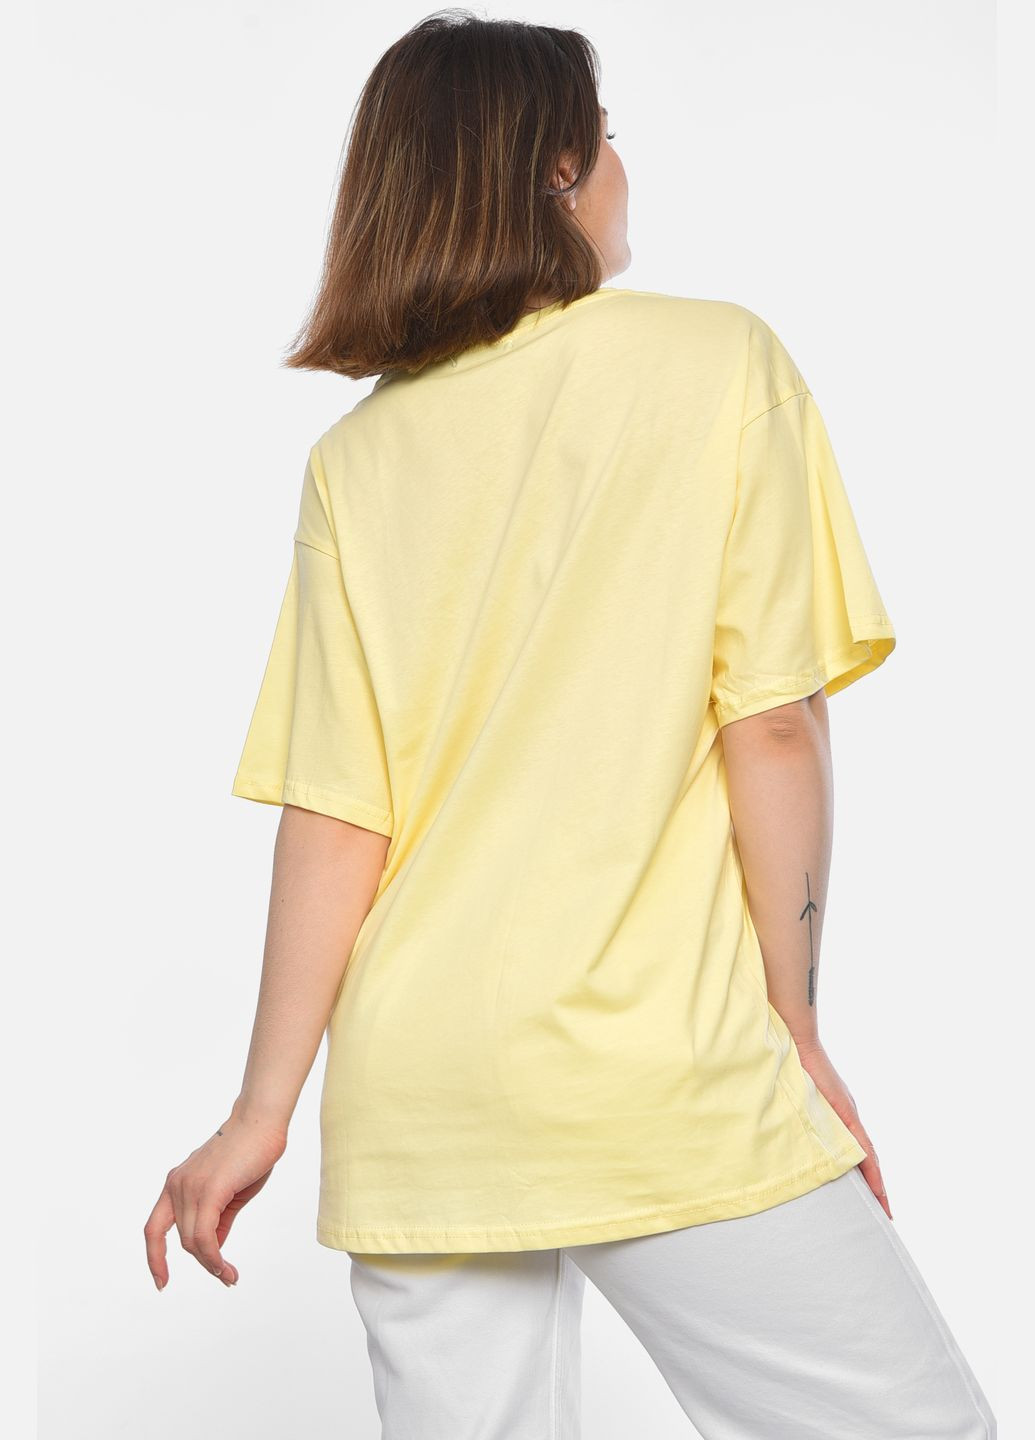 Желтая летняя футболка женская полубатальная желтого цвета Let's Shop